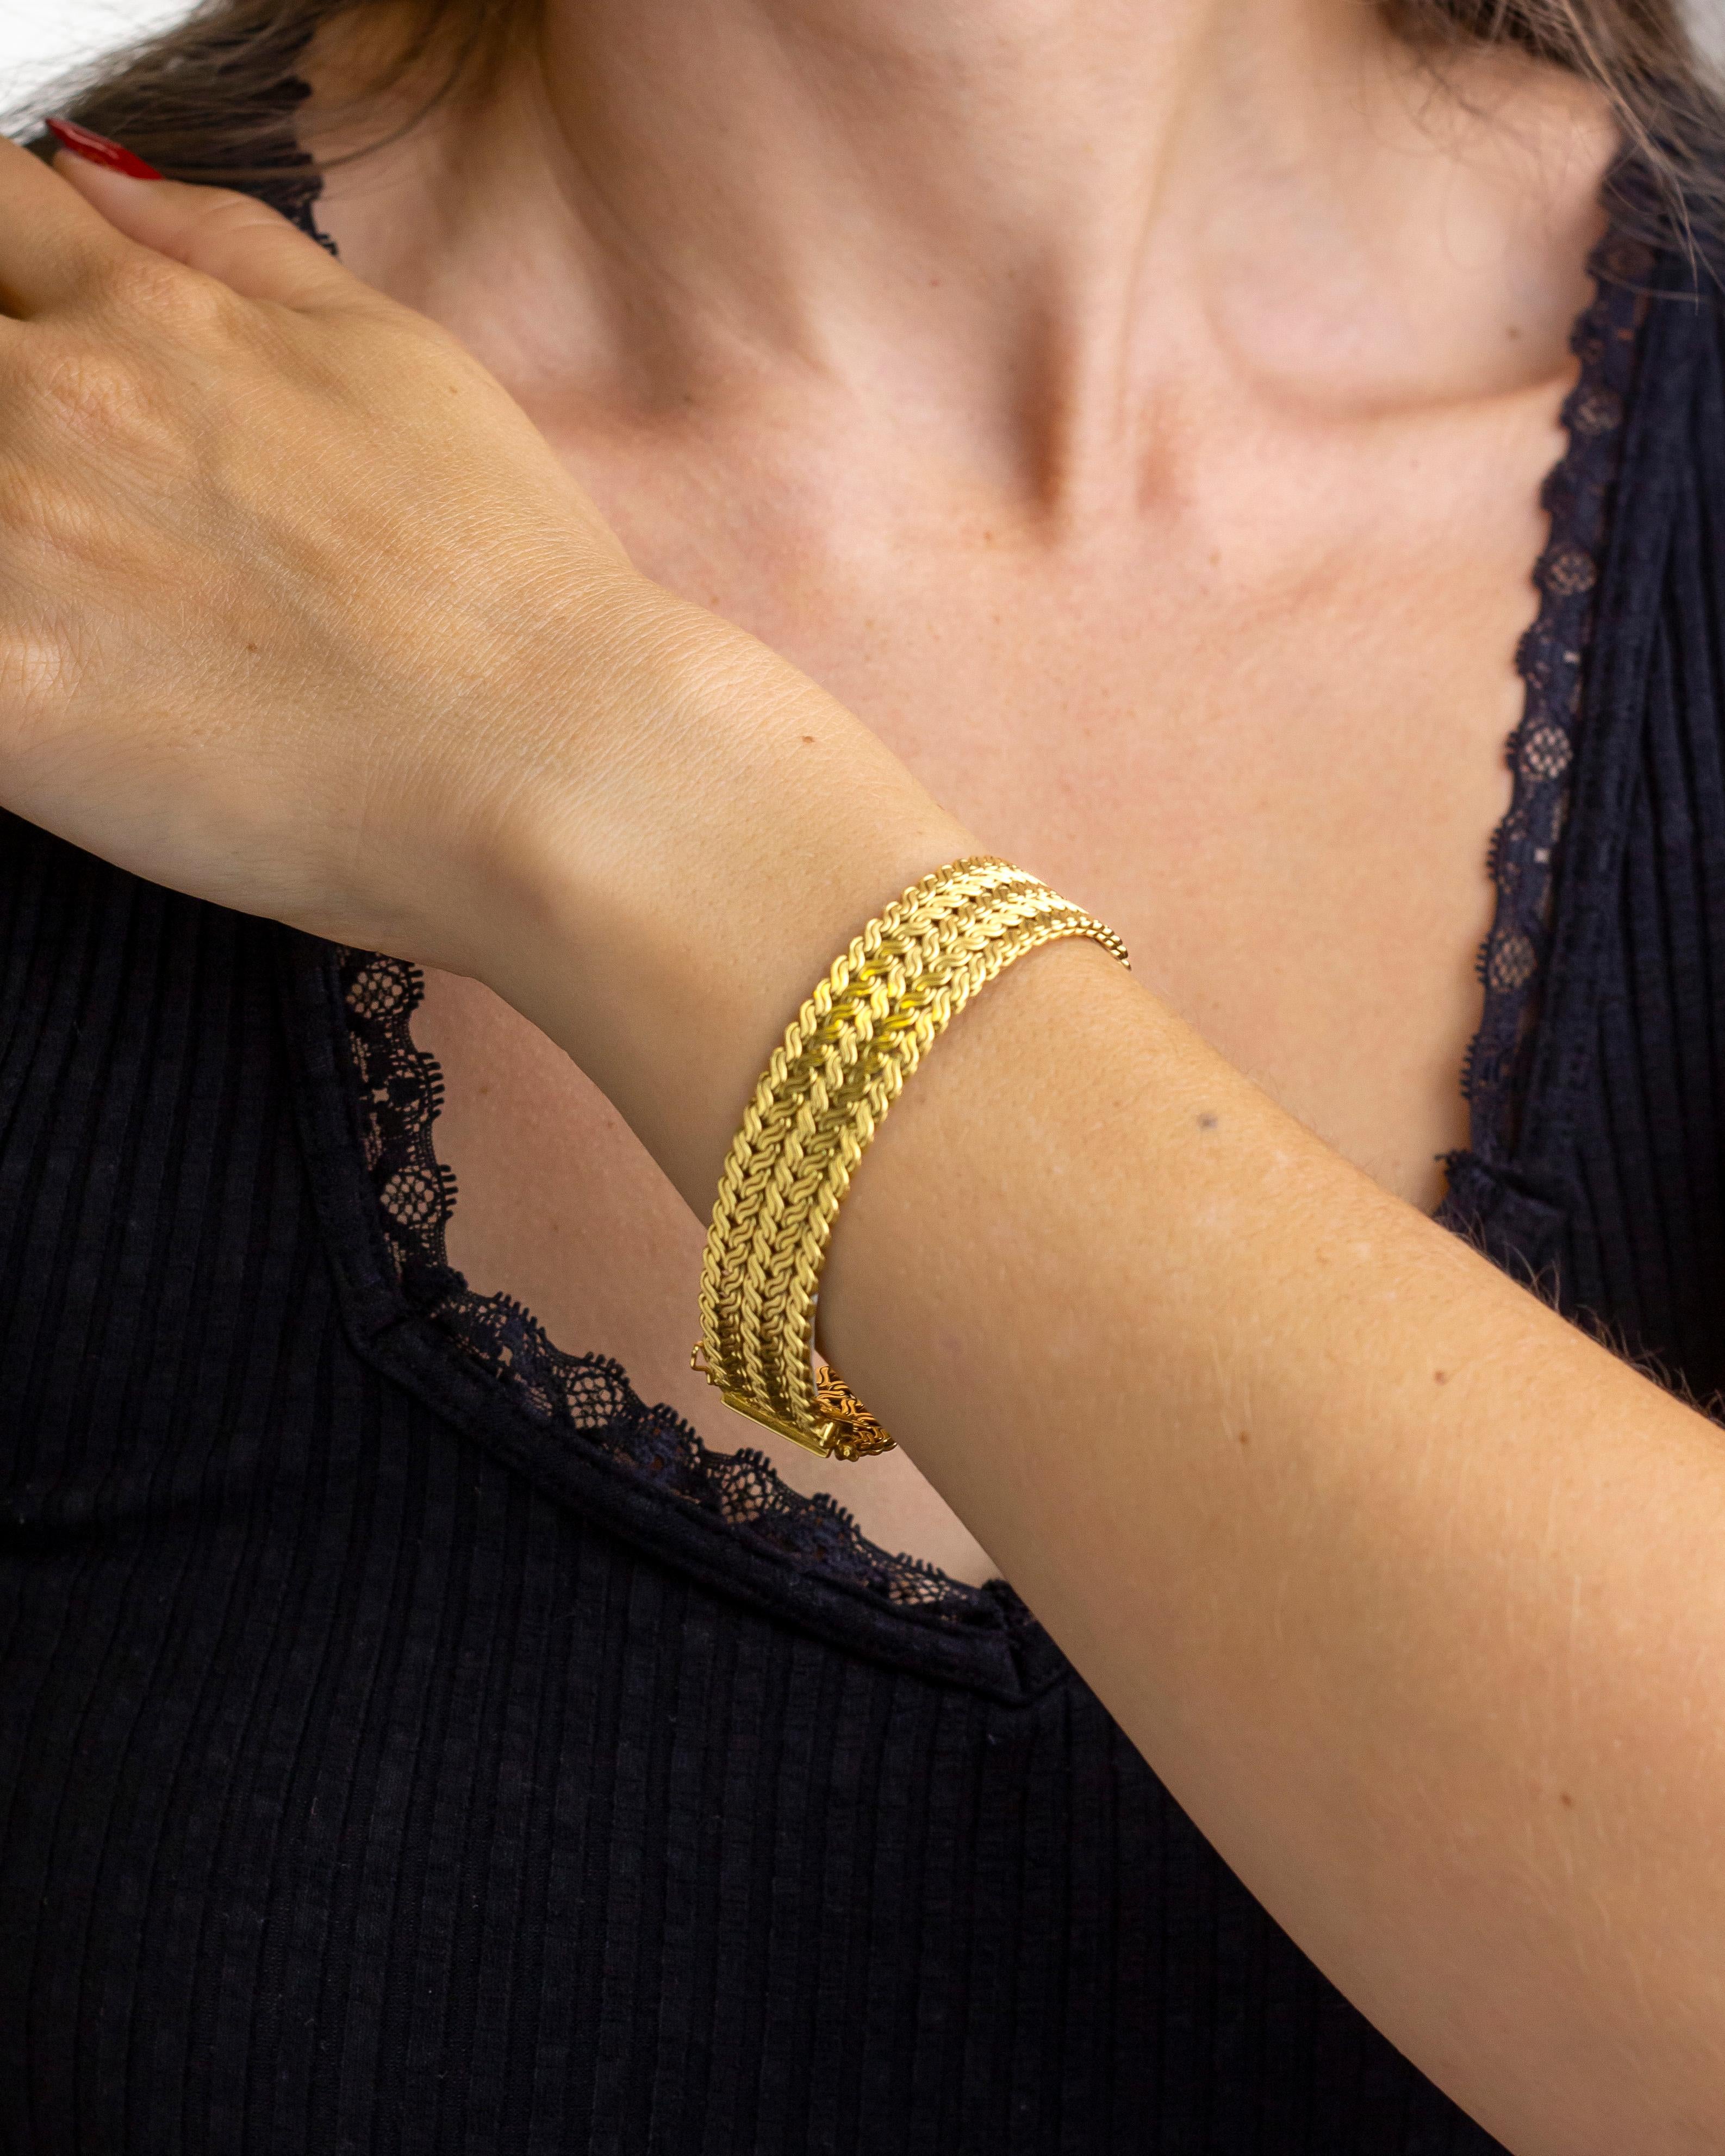 Ce bracelet imposant a été fabriqué en or 18 carats, probablement dans la seconde moitié du XXe siècle. Le bracelet, d'aspect tissé, est doté d'un fermoir en forme de languette et de boîte qui fonctionne bien, ainsi que de deux fermoirs de sécurité